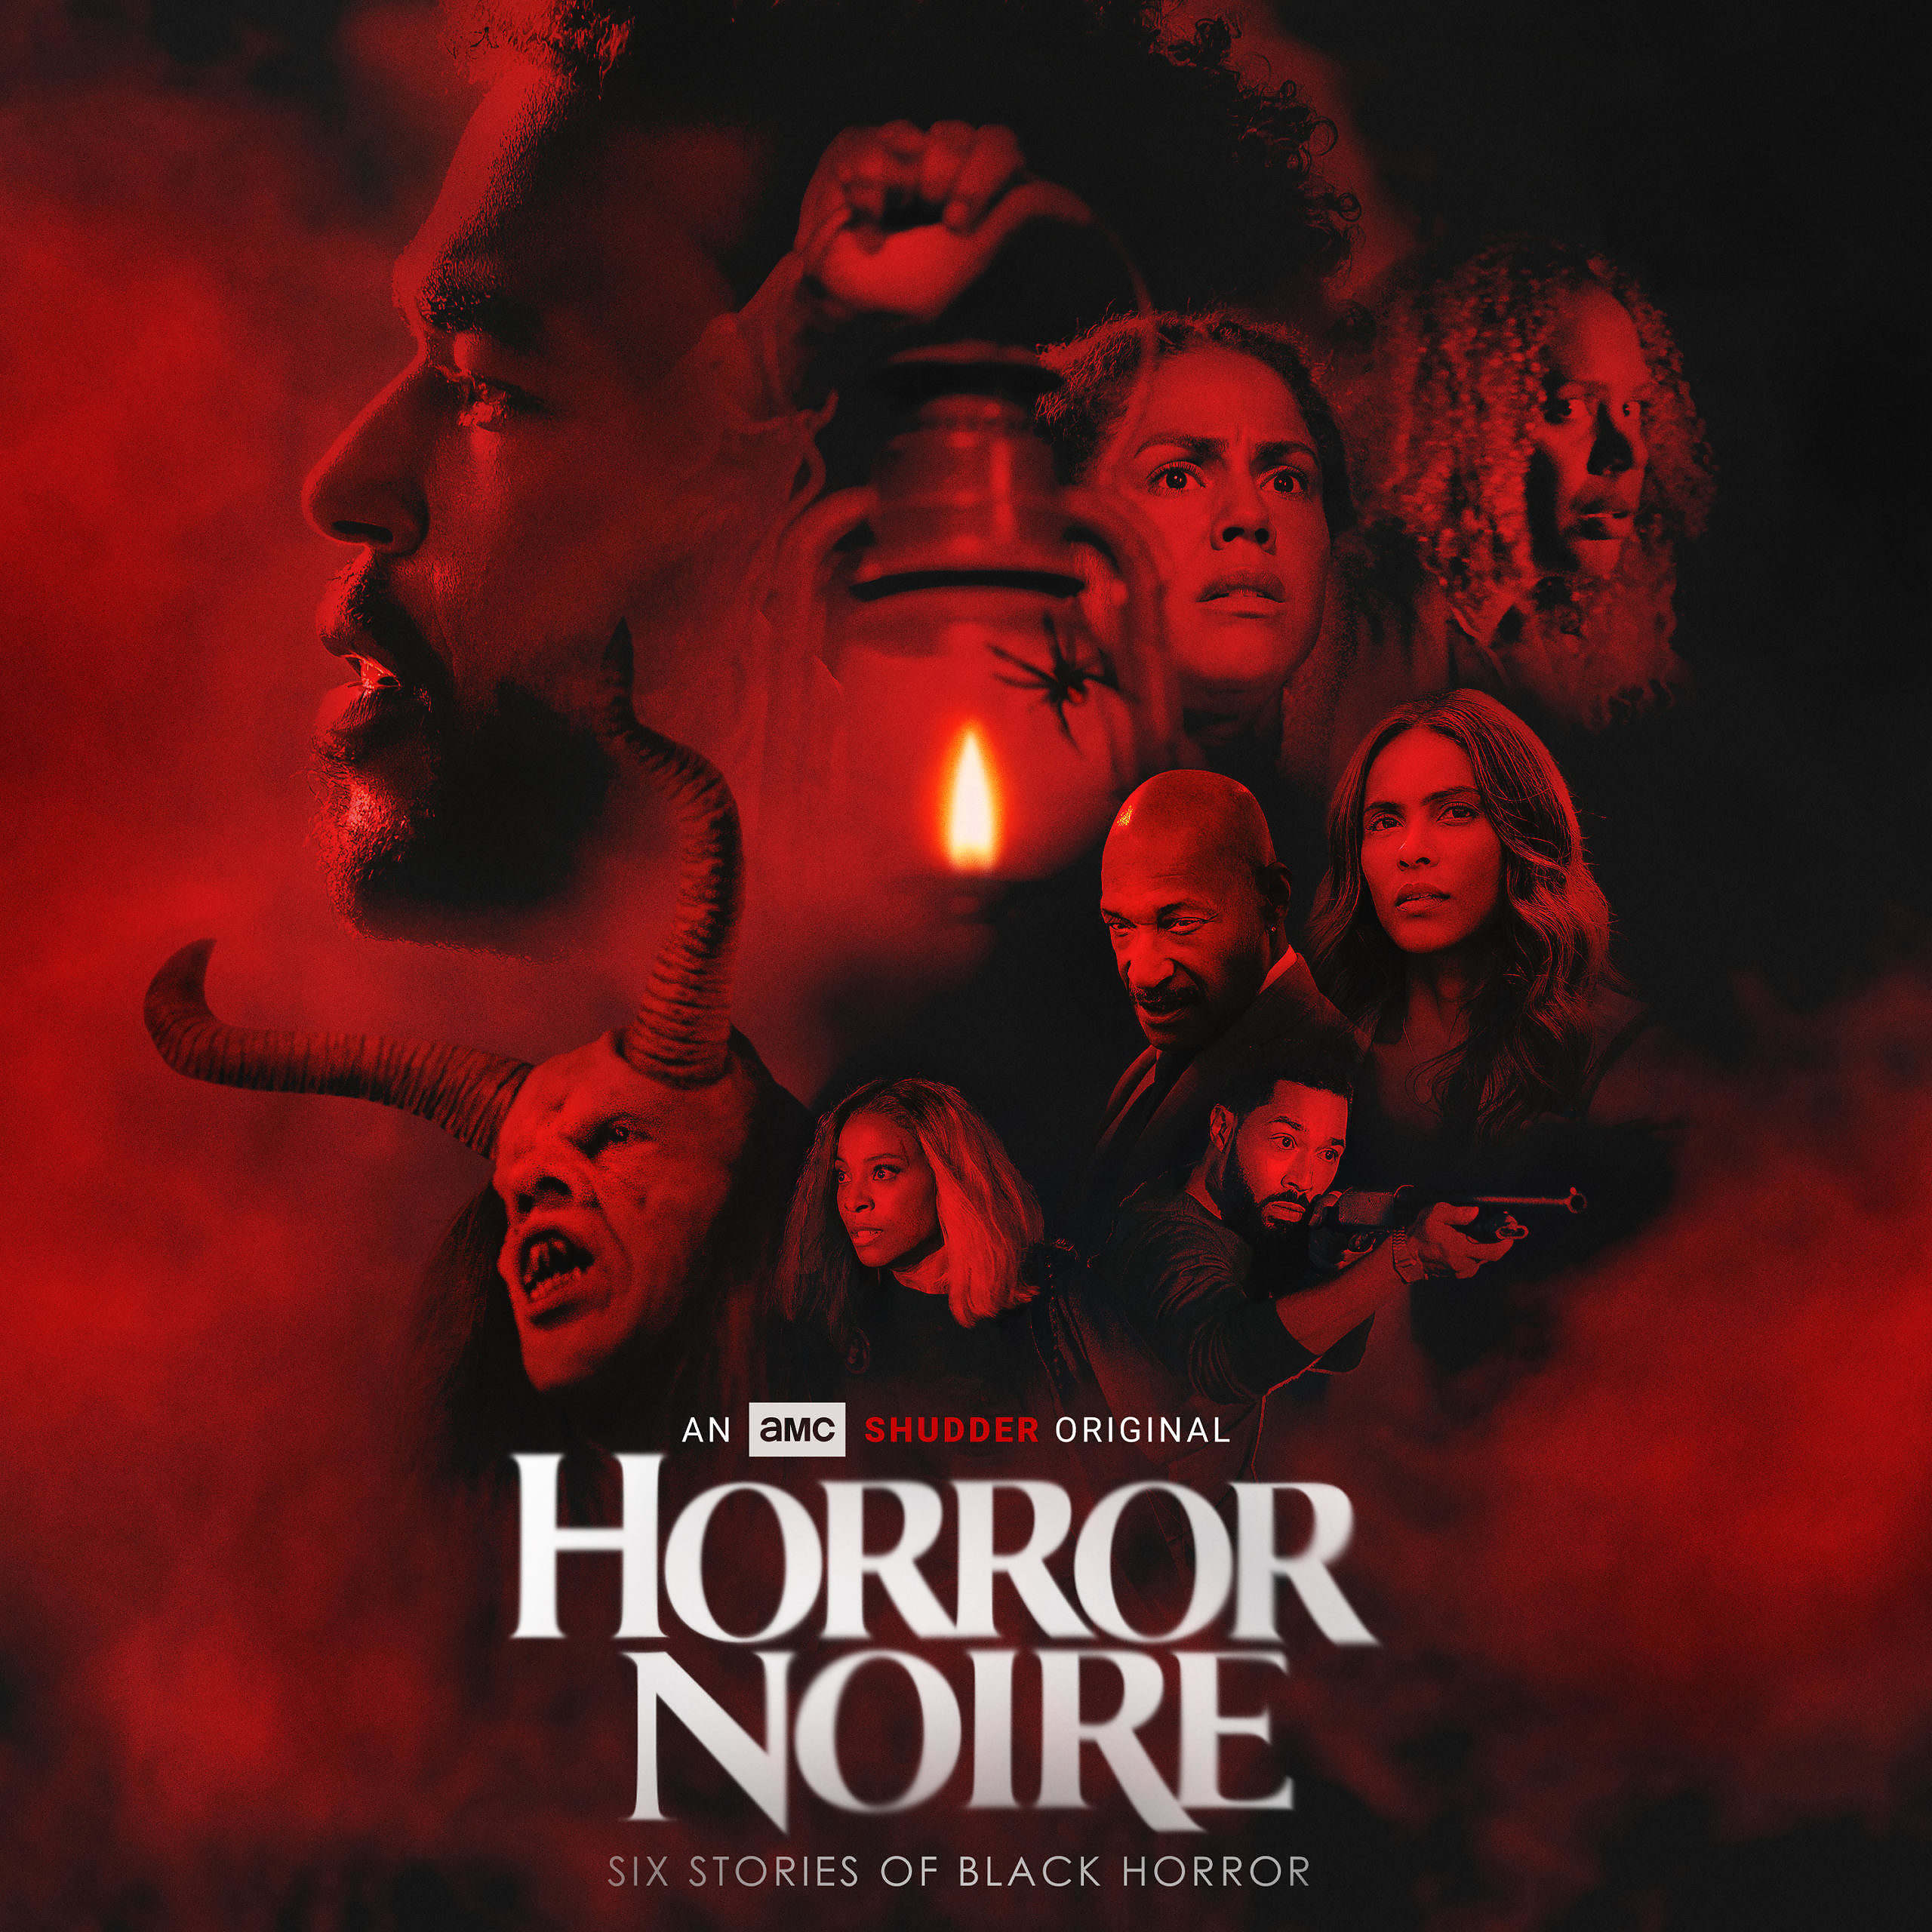 1st Trailer For Shudder Original Movie 'Horror Noire'